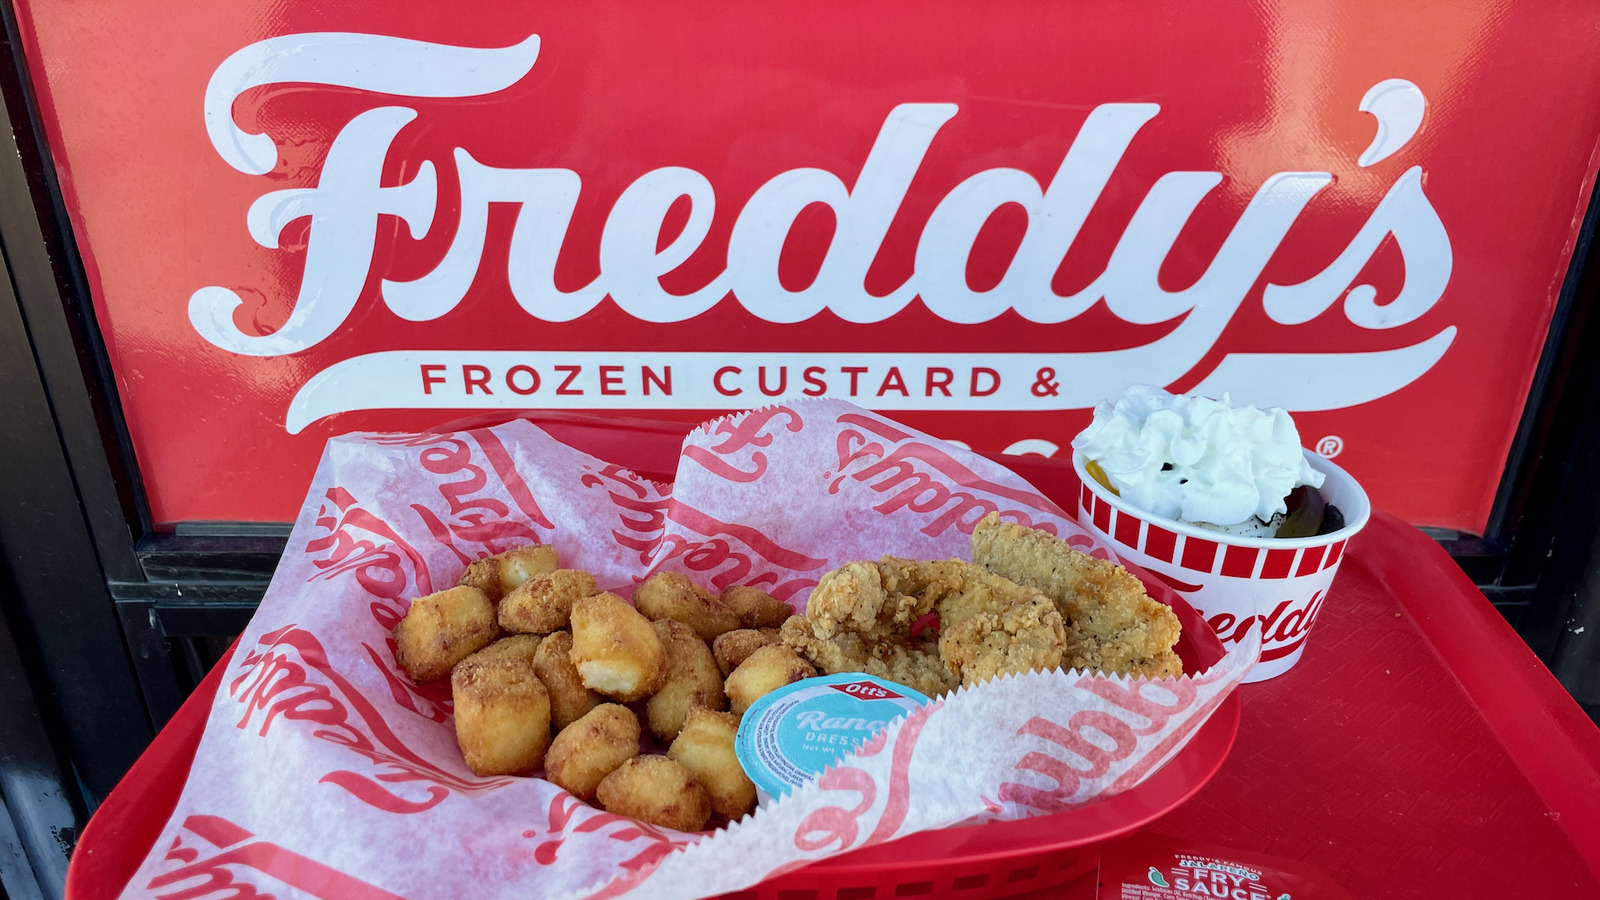 About  Freddy's Frozen Custard & Steakburgers